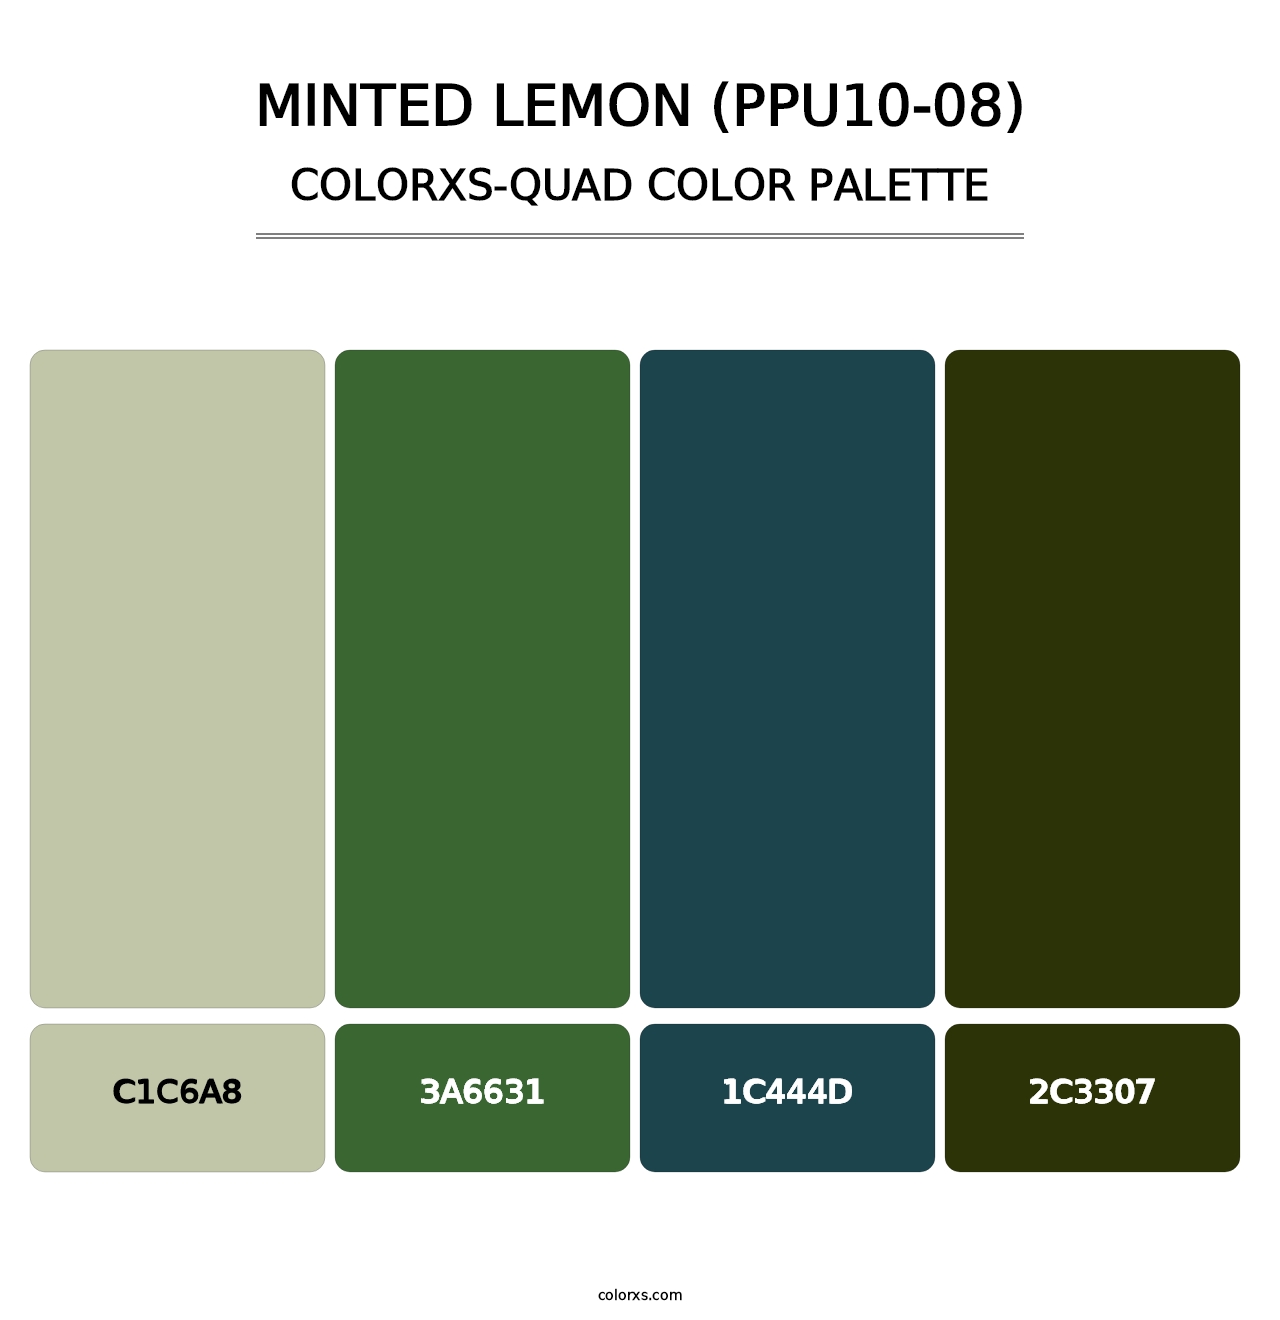 Minted Lemon (PPU10-08) - Colorxs Quad Palette